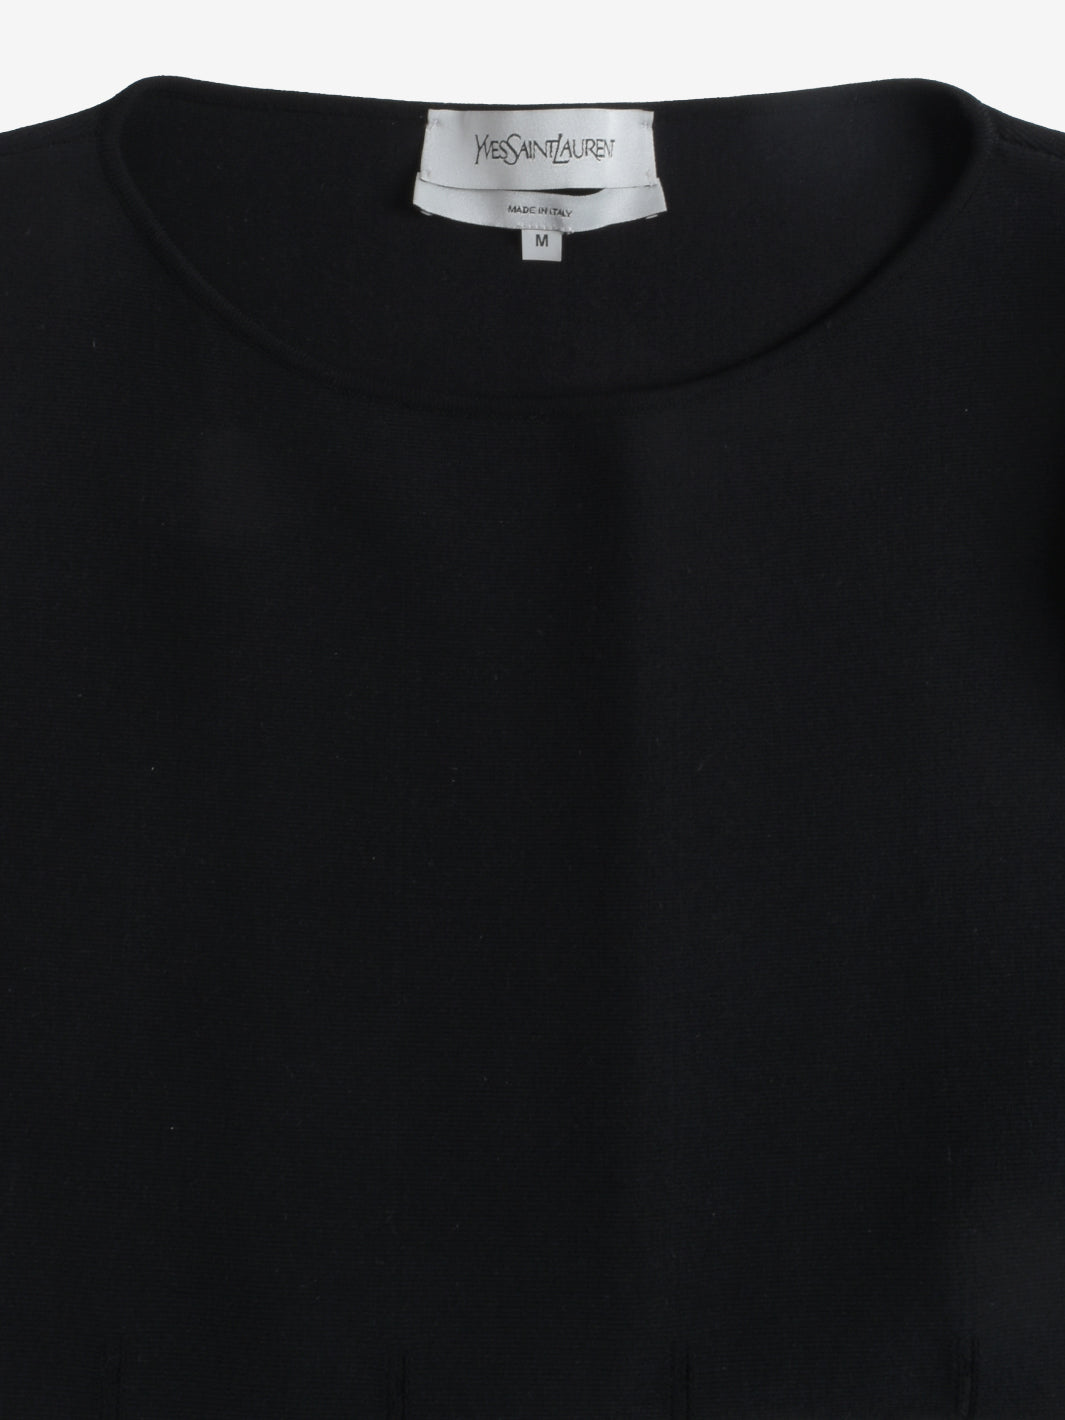 Yves Saint Laurent Structured BlackDress